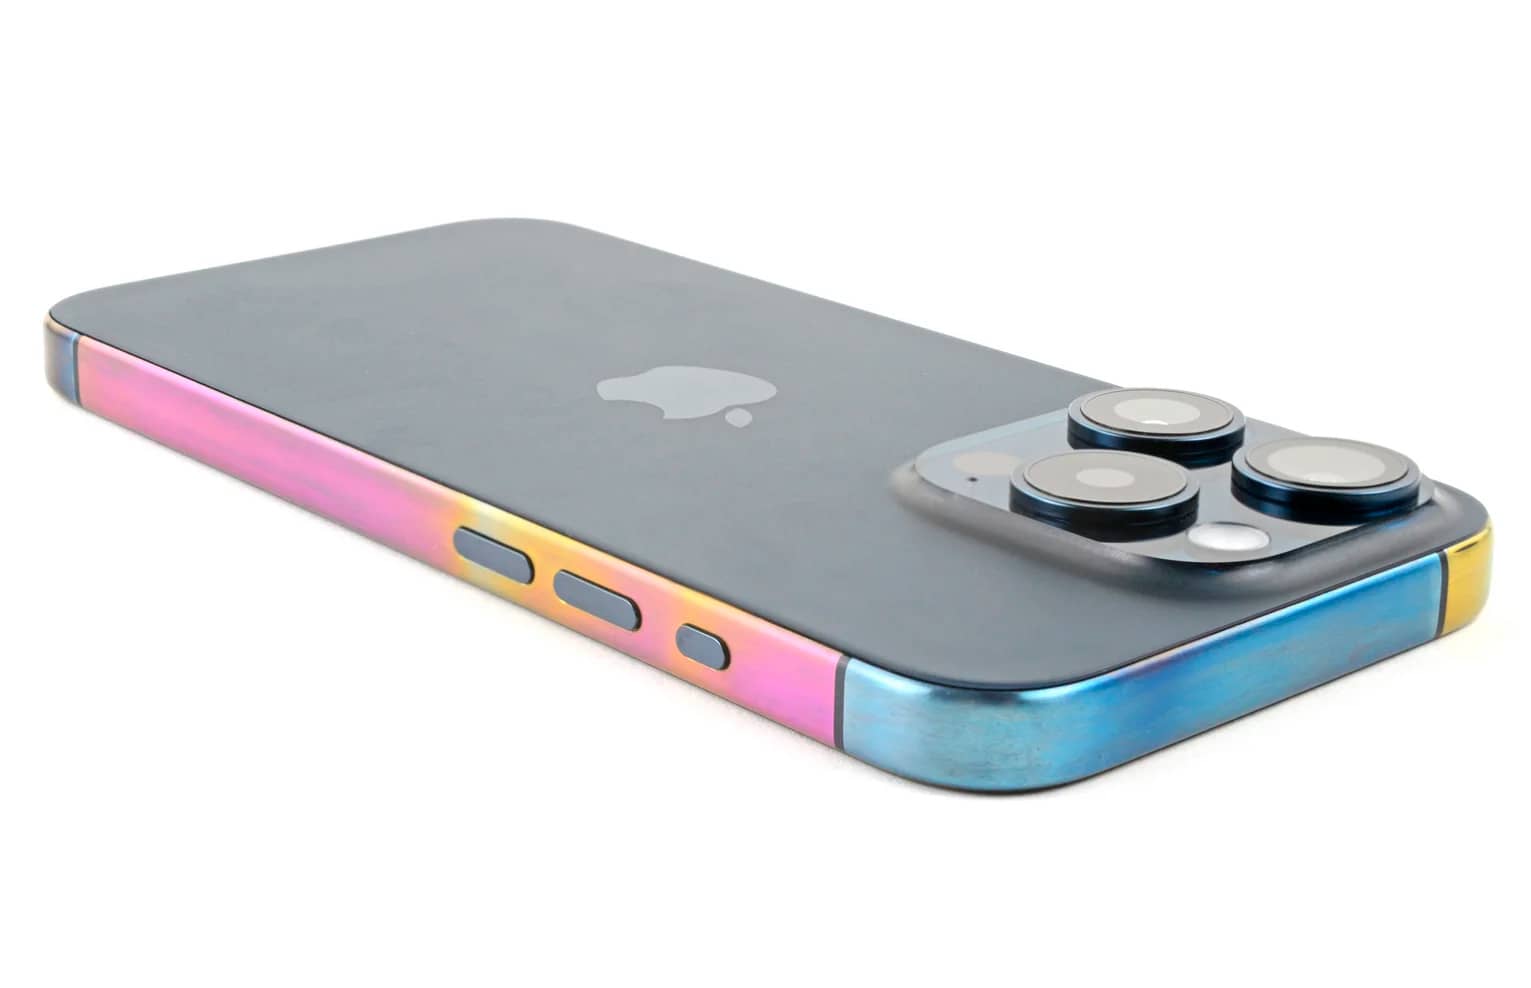 Титанова рамка нових iPhone вміє змінювати колір